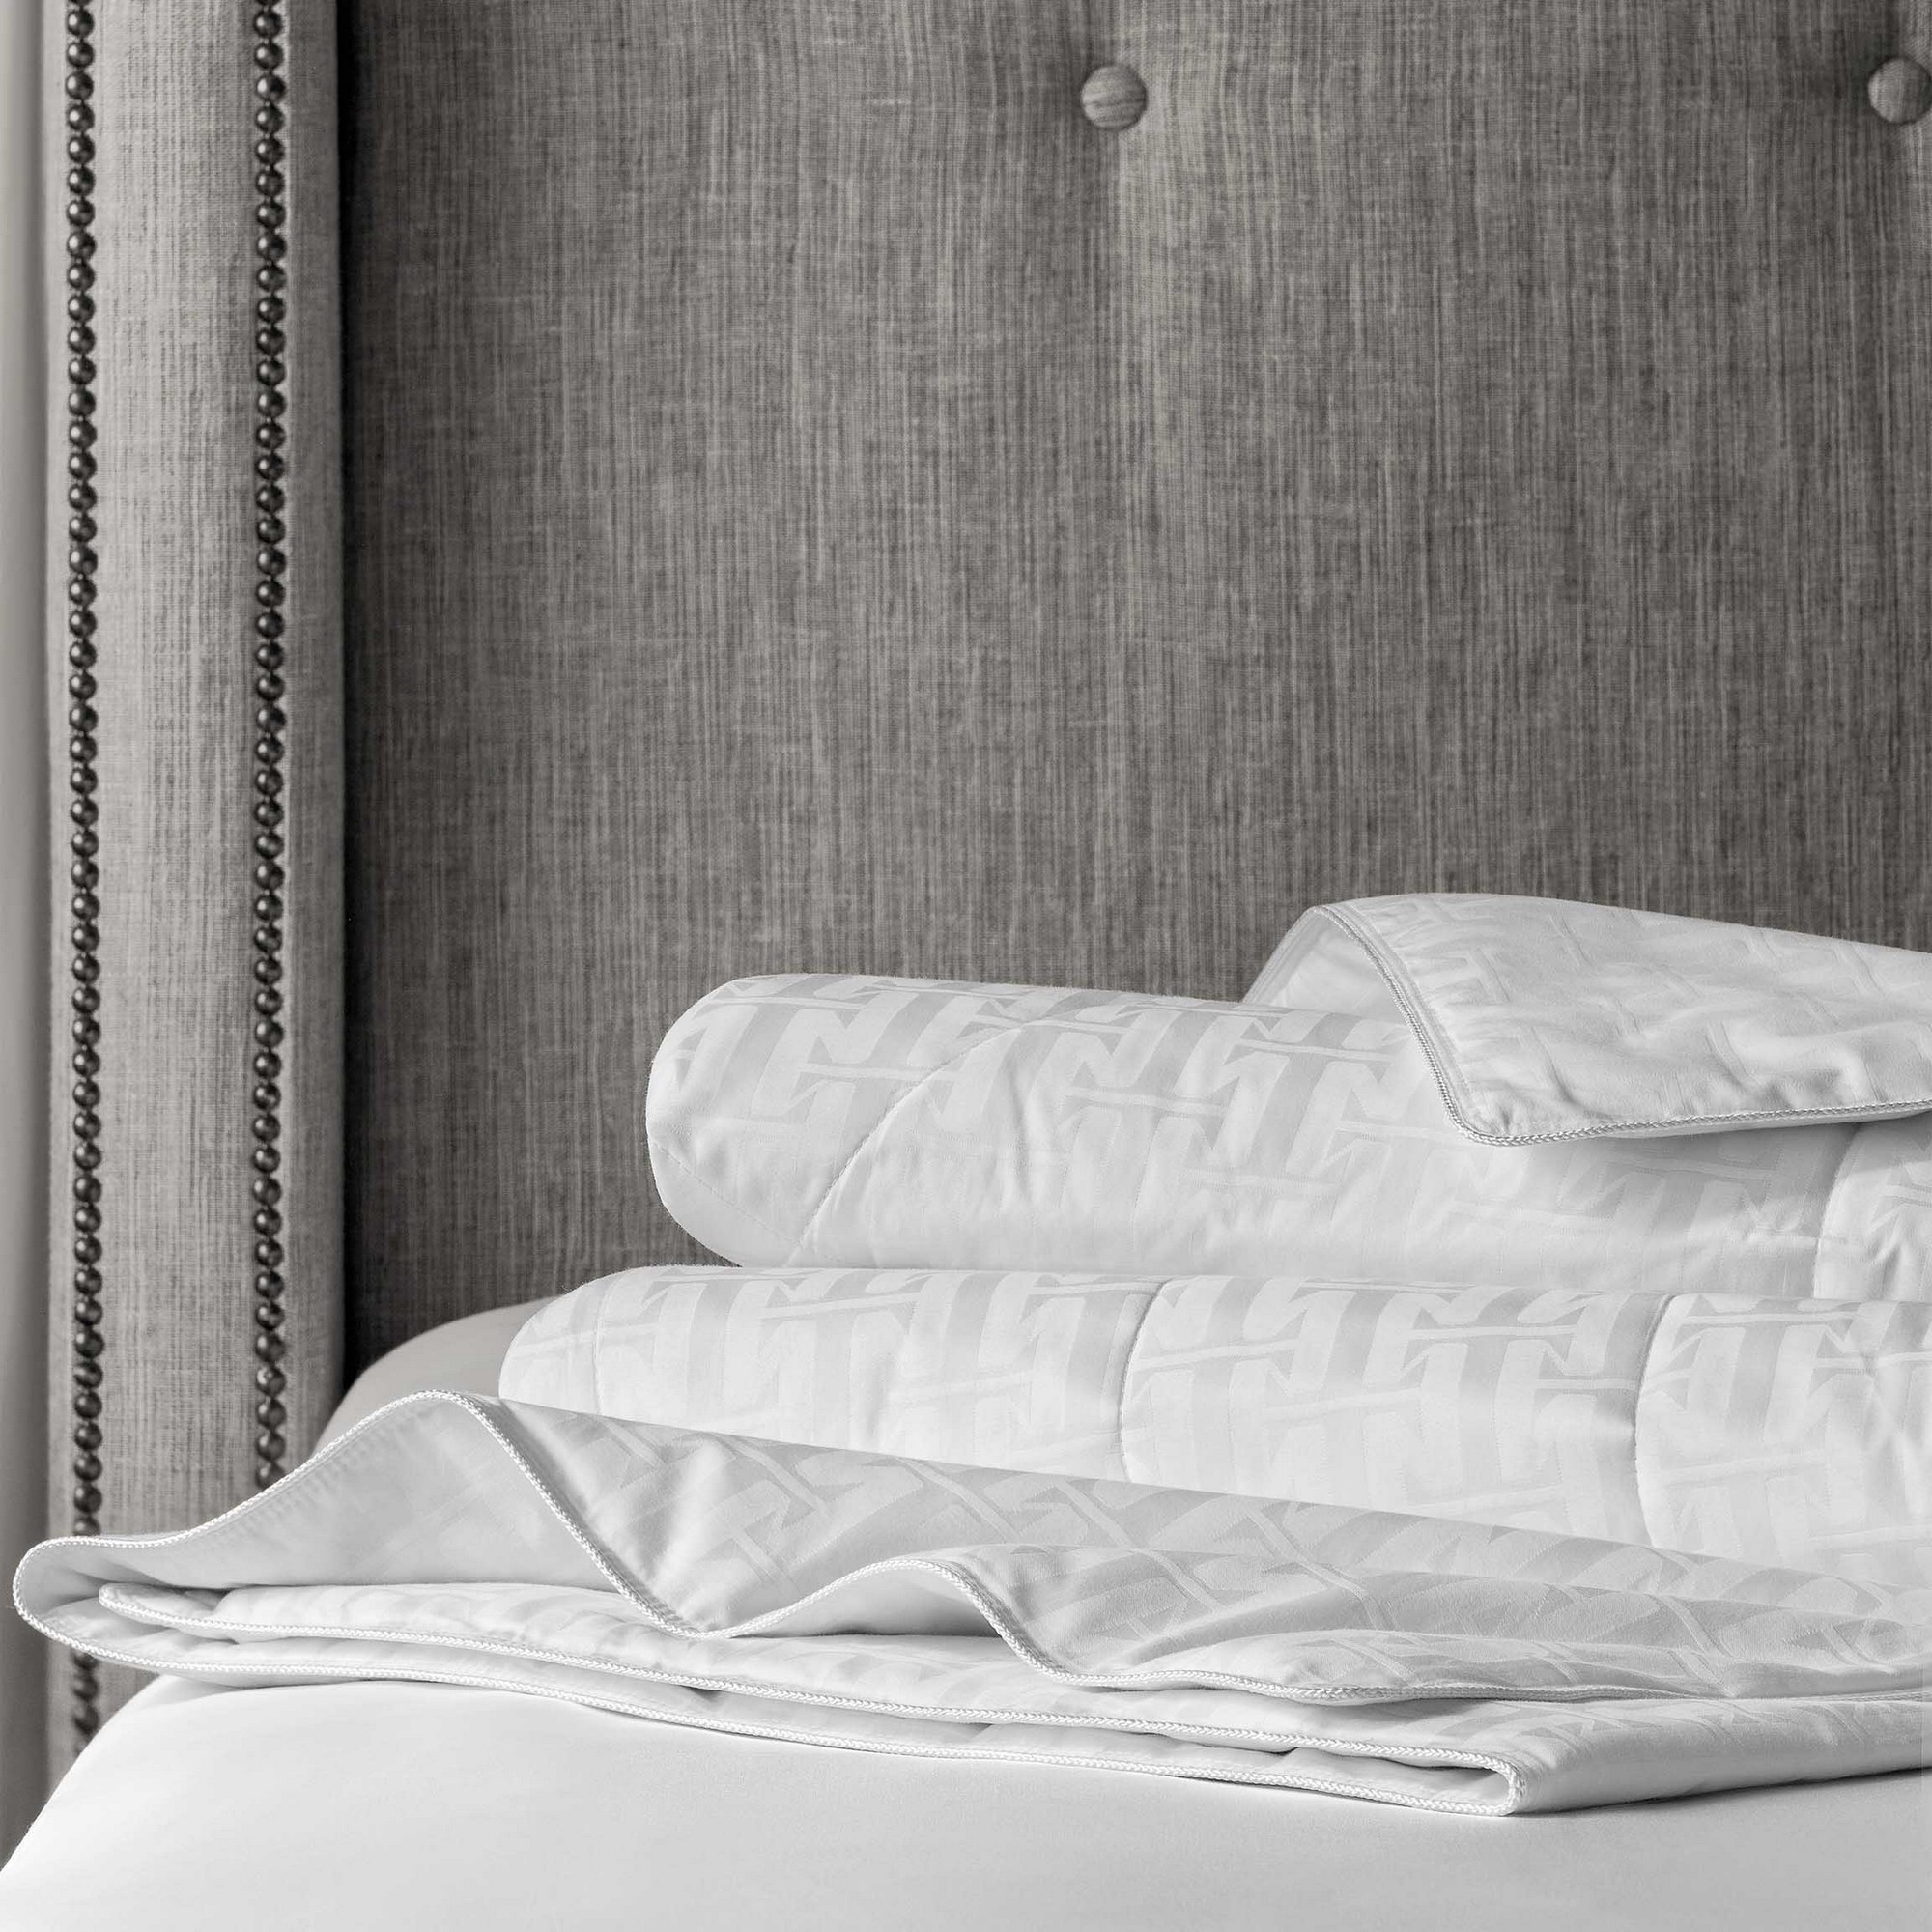 Одеяло Селена Лайт (200х210 см), размер 200х210 см, цвет белый tgs355768 Одеяло Селена Лайт (200х210 см) - фото 1